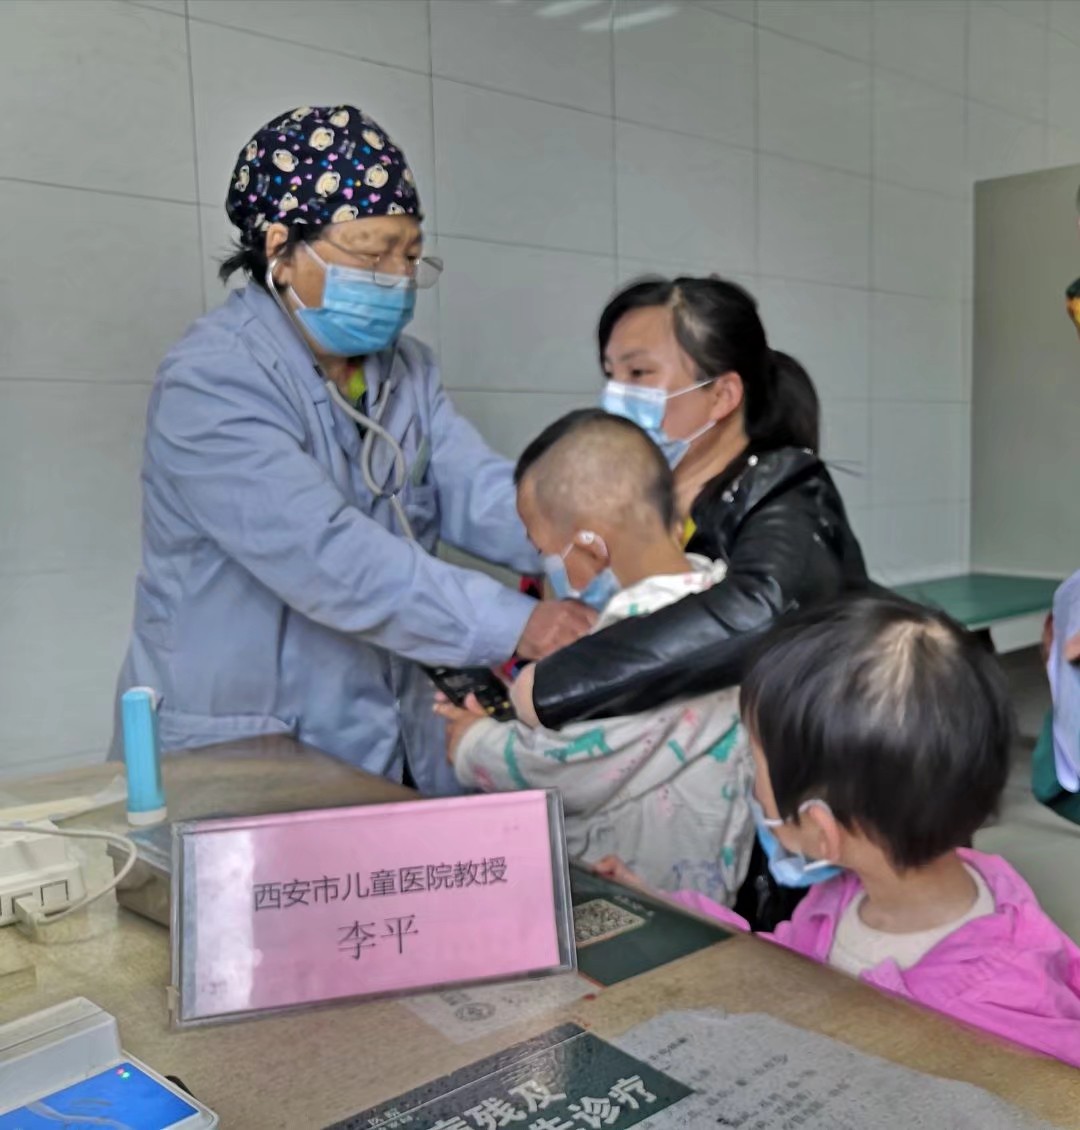 渭南市第一医院儿科:西安专家定期来院坐诊 让您享受优质医疗服务